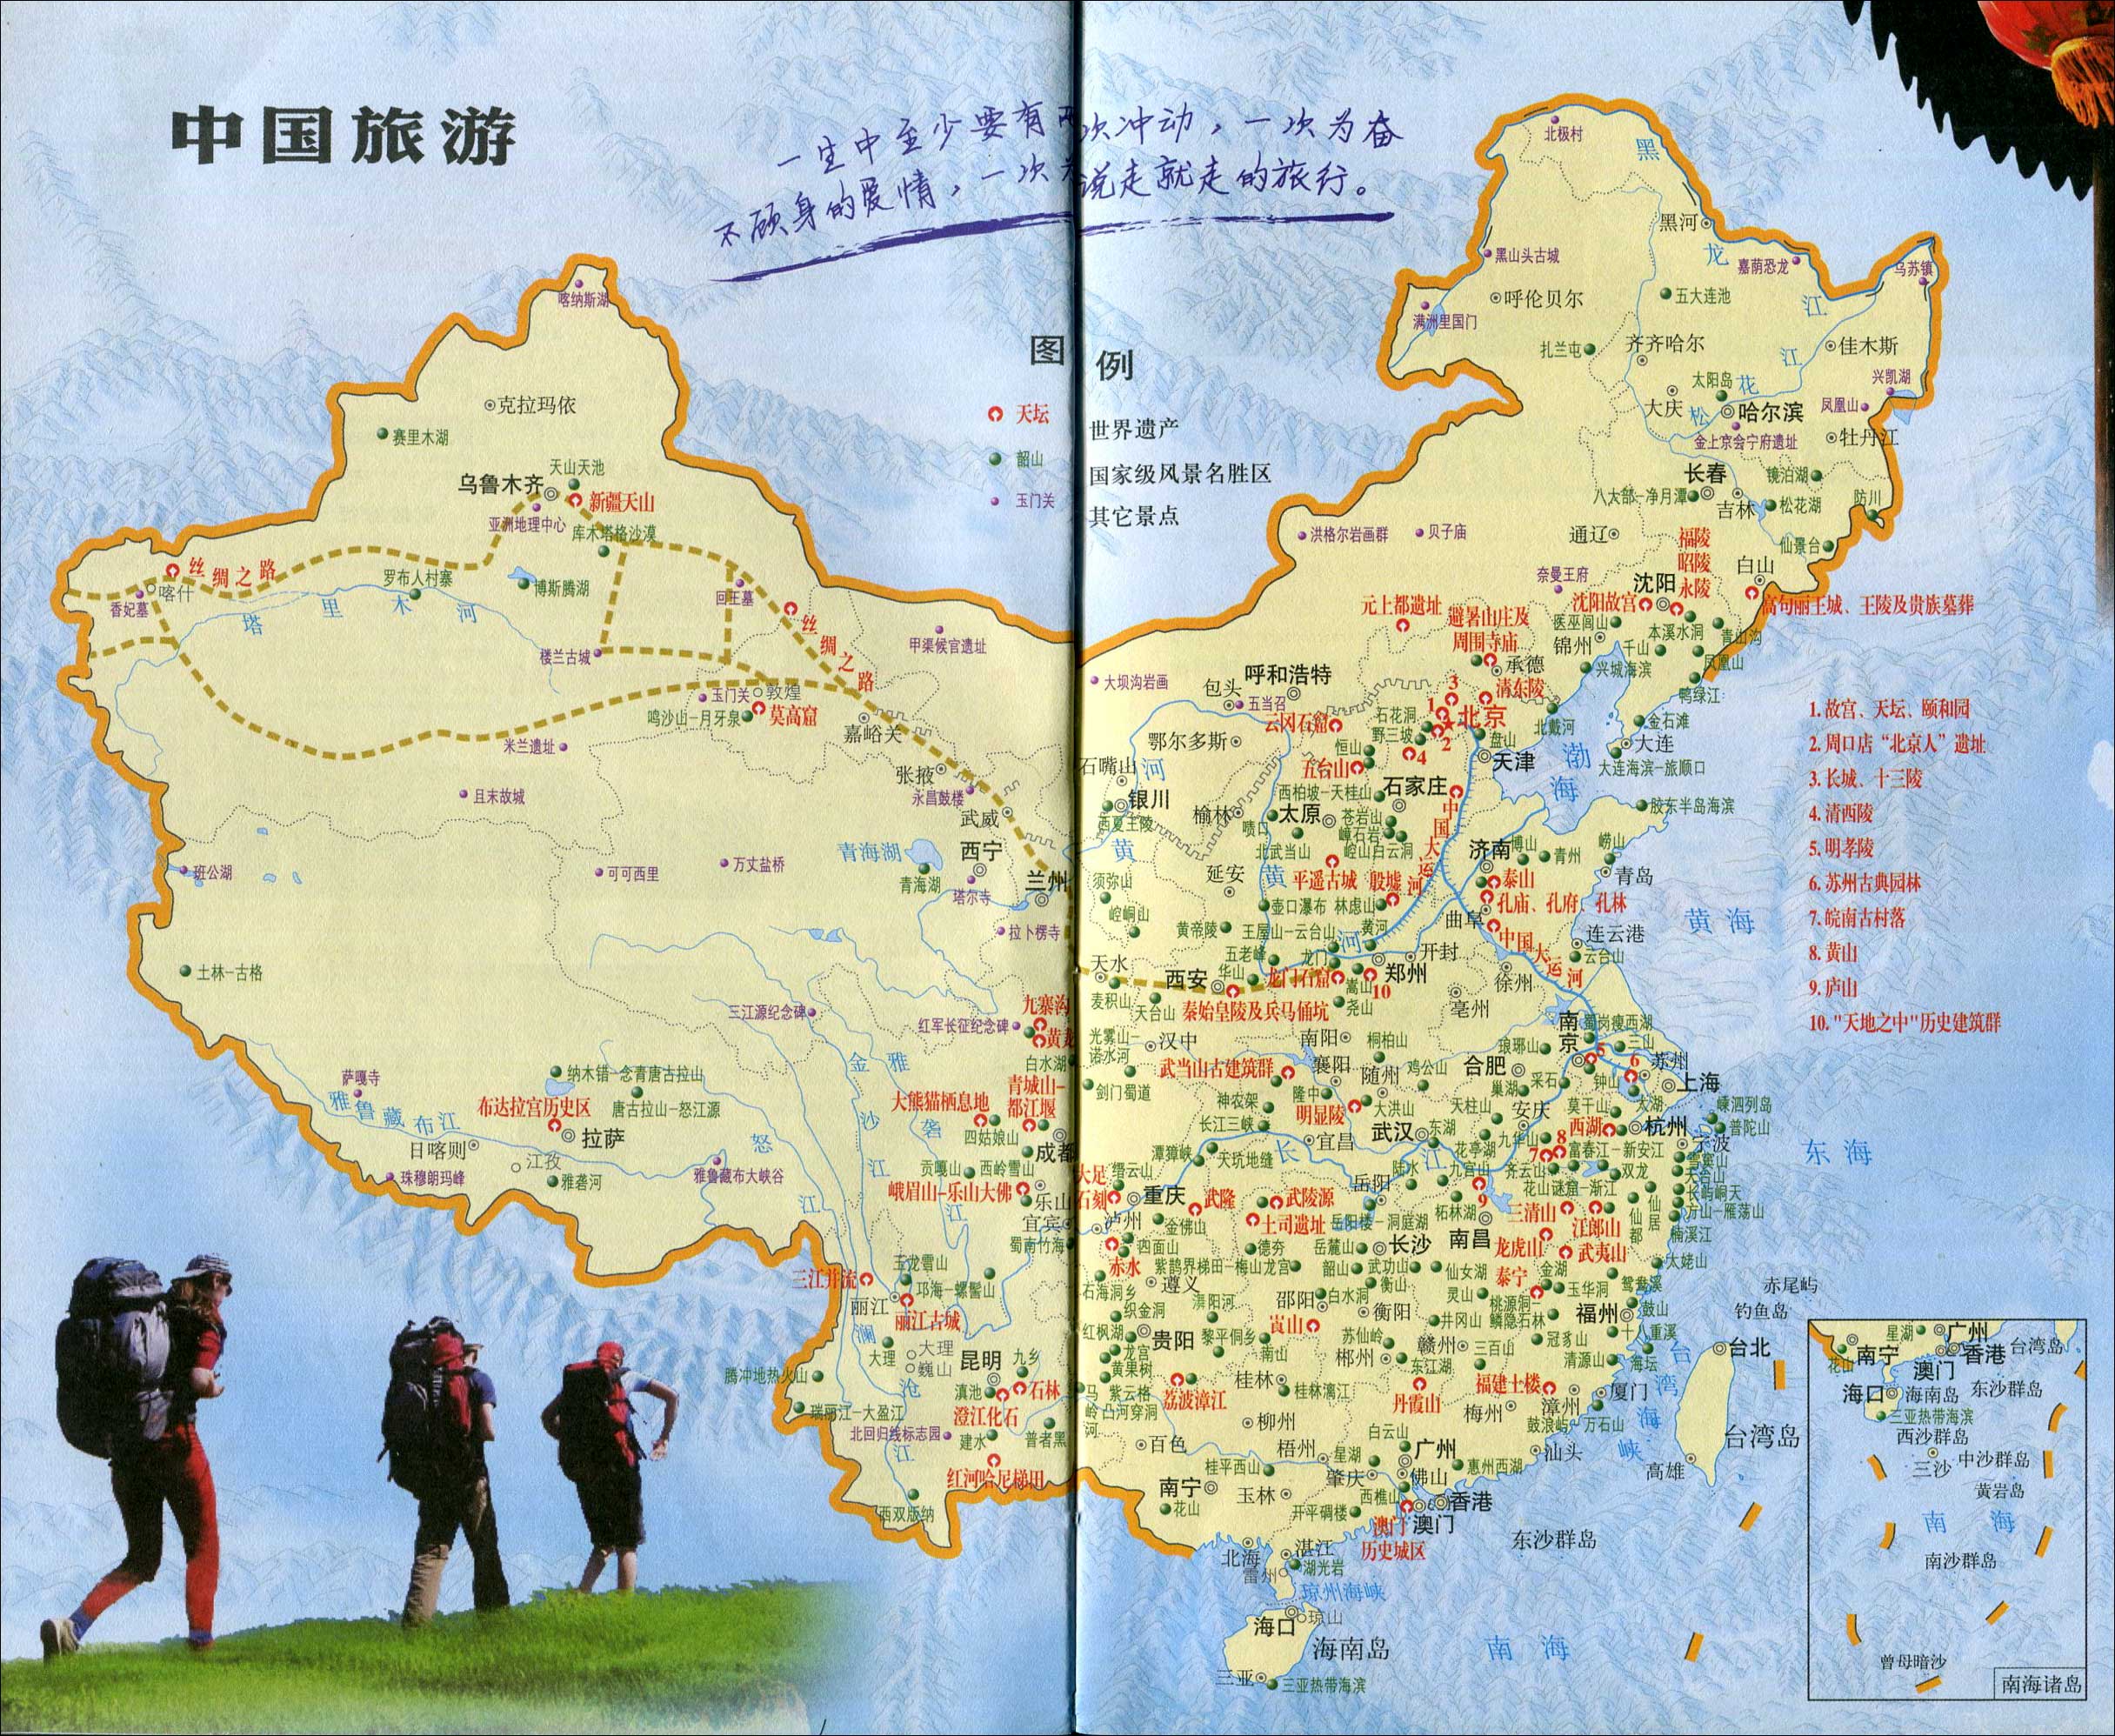 >> 中国旅游景点分布地图  景点导航:世界旅游  中国旅游  北京旅游图片